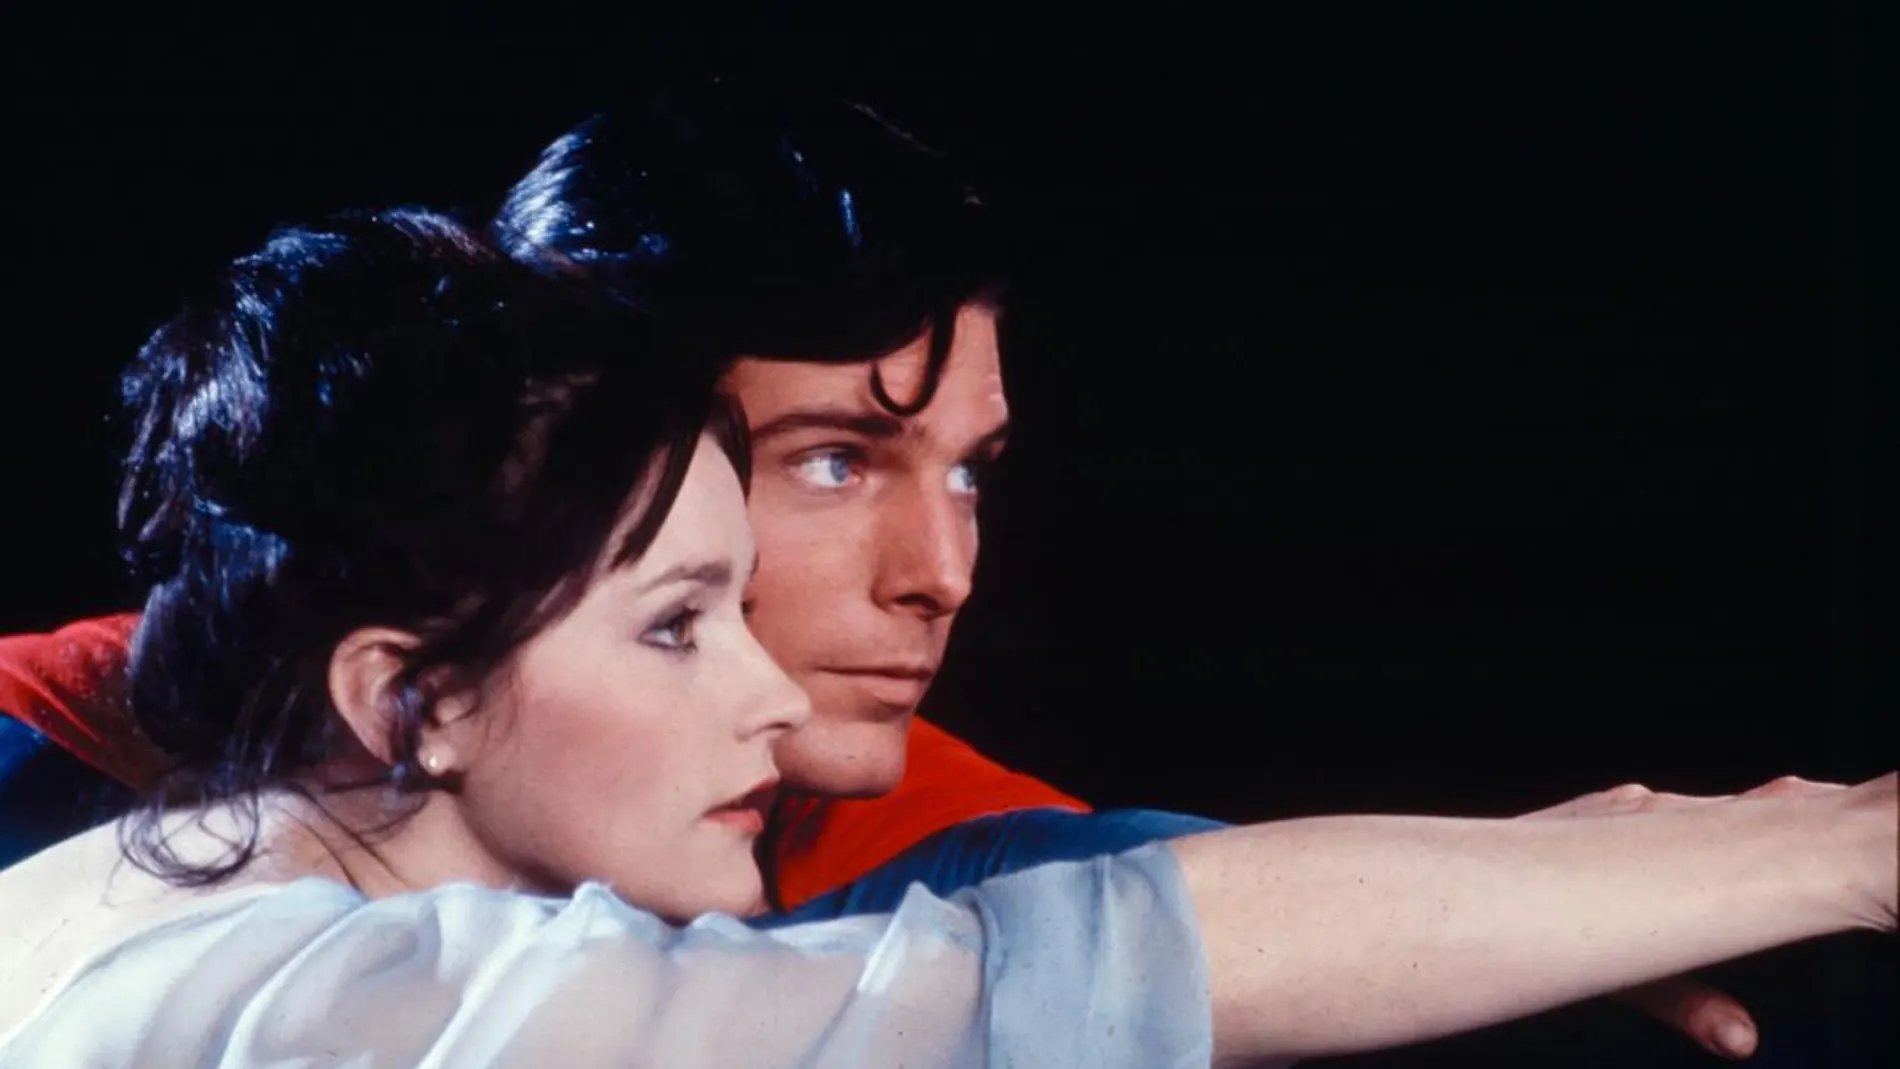 Christopher Reeve, como Superman, y Margot Kidder, como Lois Lane, en una escena de la película "Superman"de 1978. Ambos actores han fallecido ya. (AP Photo/TMS &amp; DC Comics Inc.)